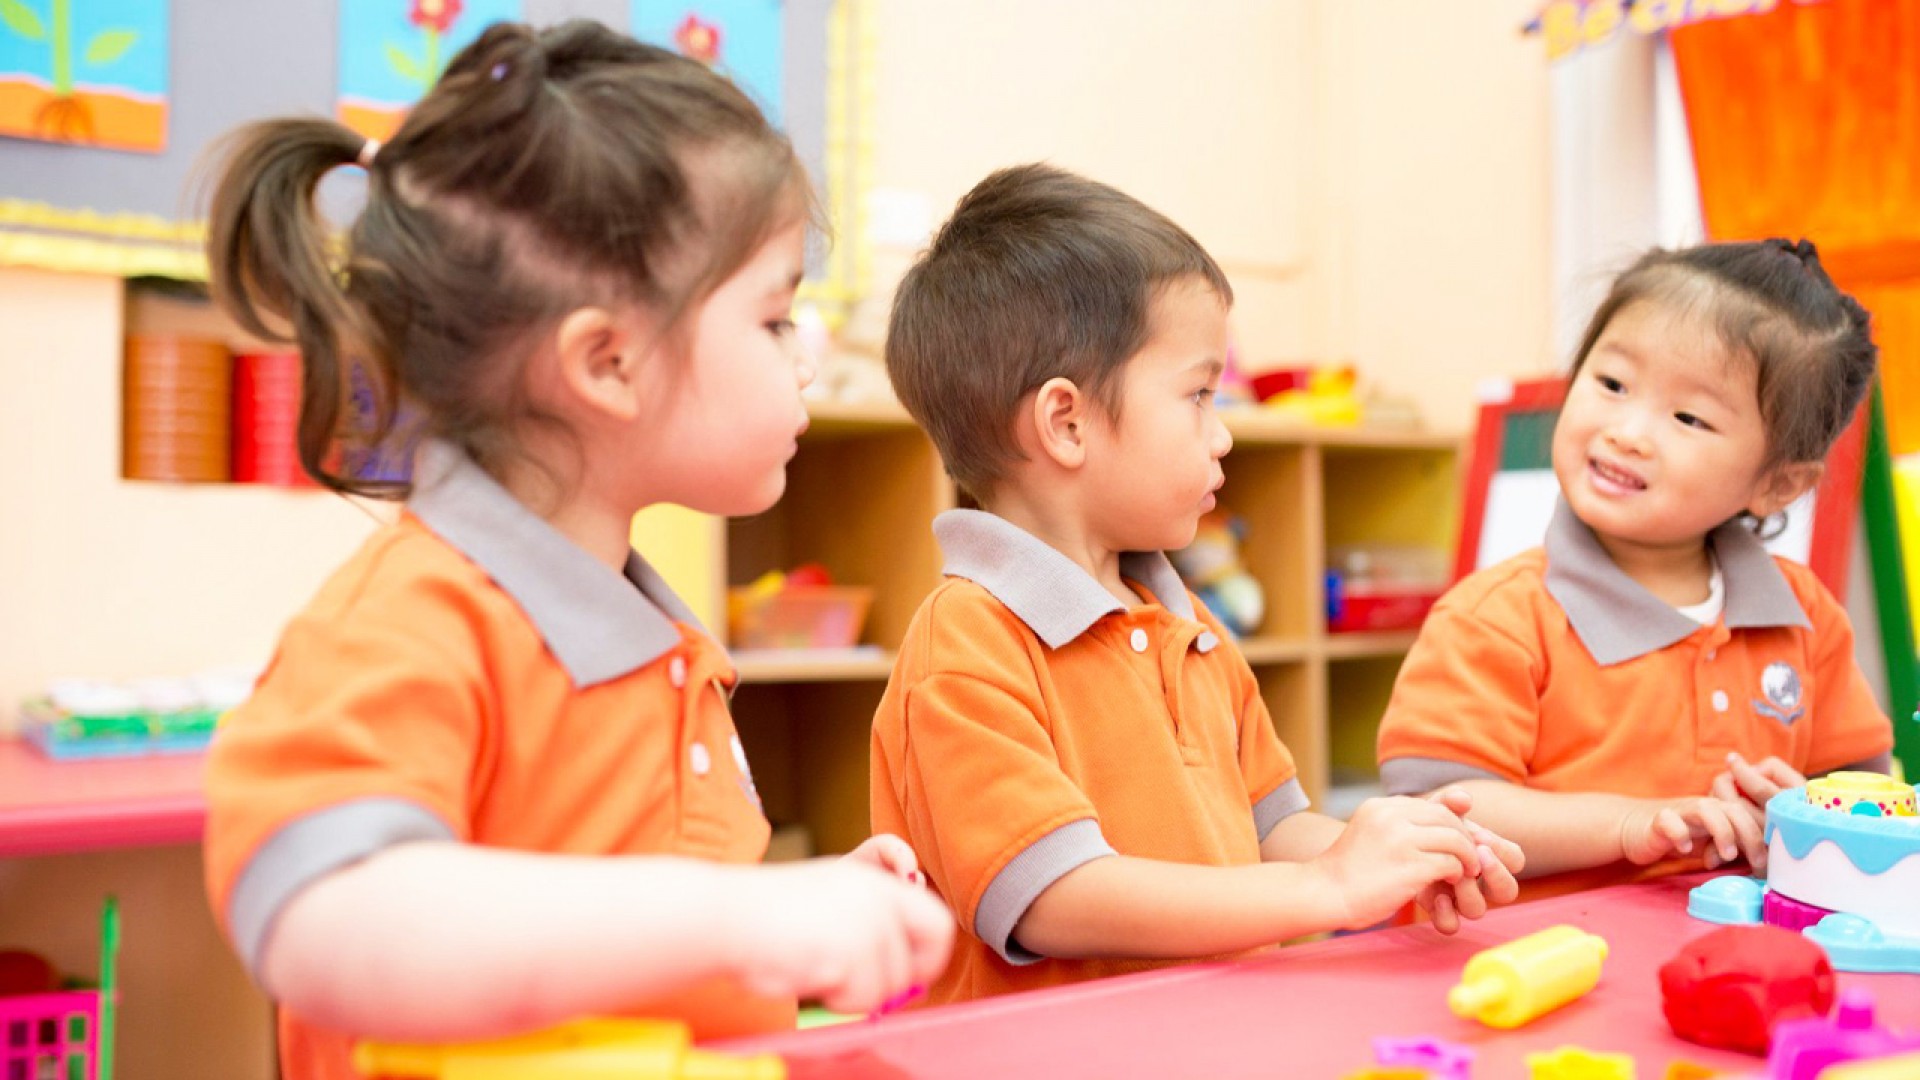 KinderWorld International Kindergarten: Tạo dựng tương lai với môi trường học tập lý tưởng